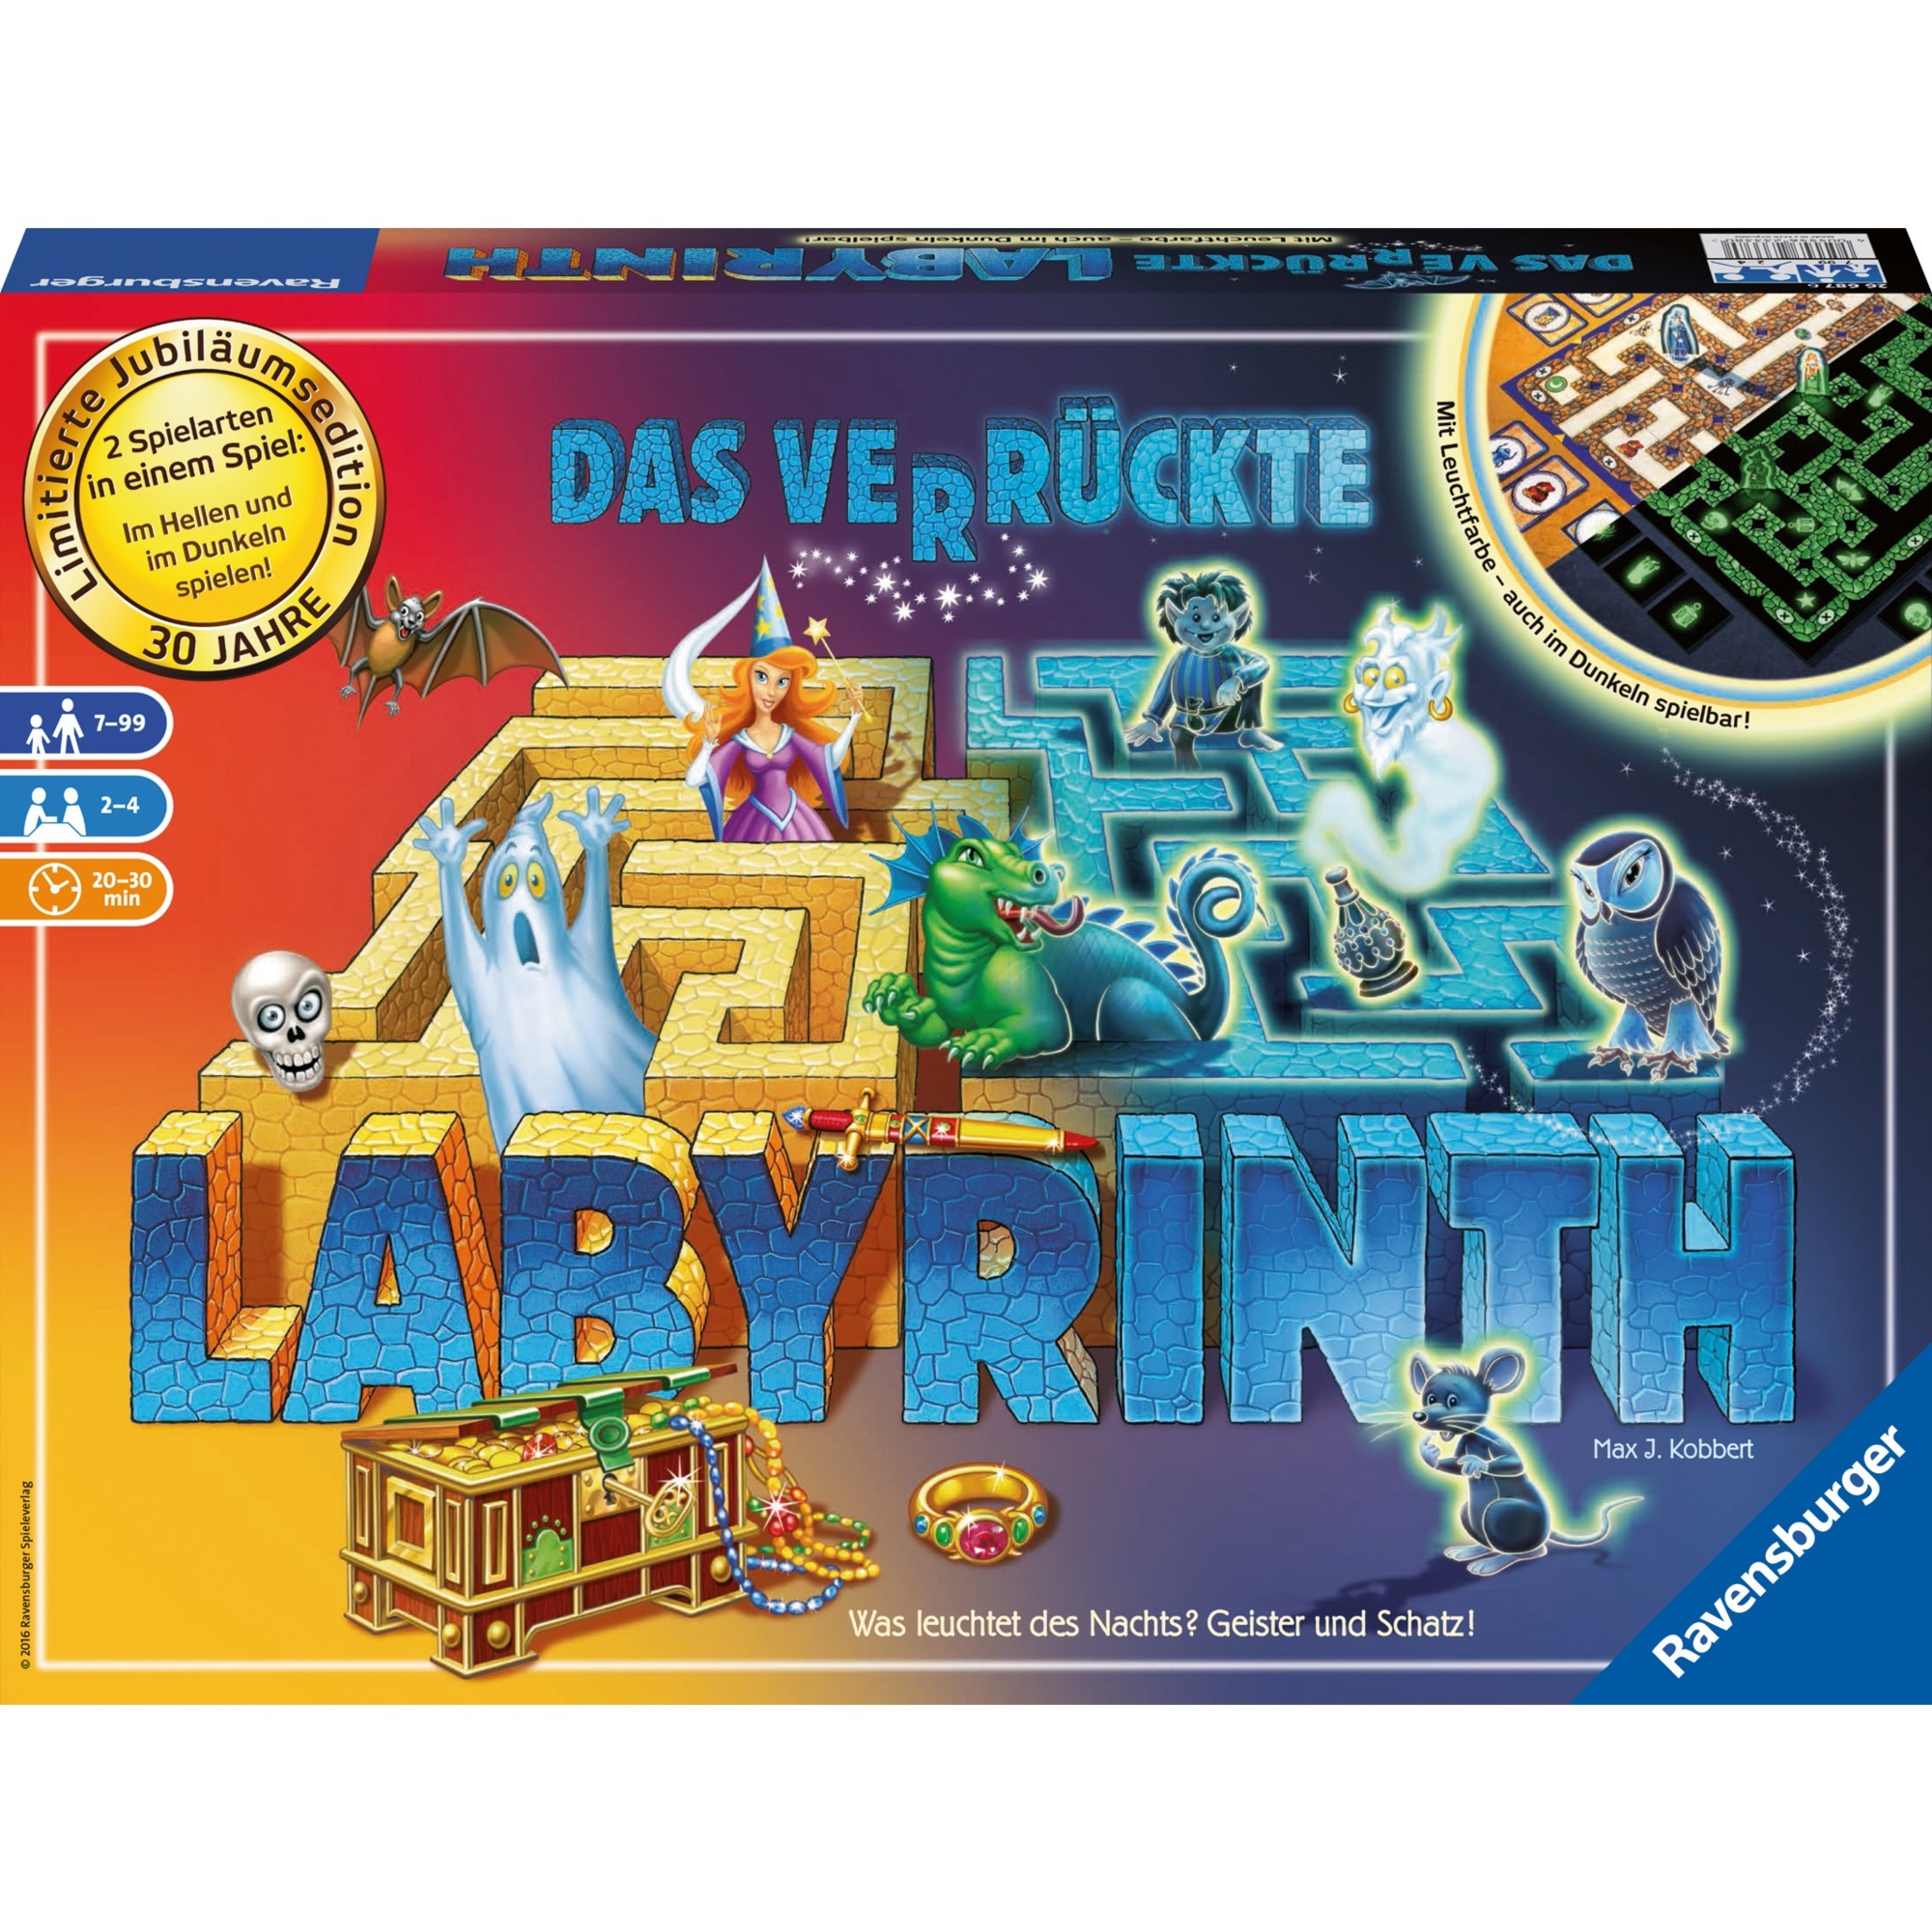 Image of Alternate - Das verrückte Labyrinth: 30 Jahre Jubiläumsedition, Brettspiel online einkaufen bei Alternate